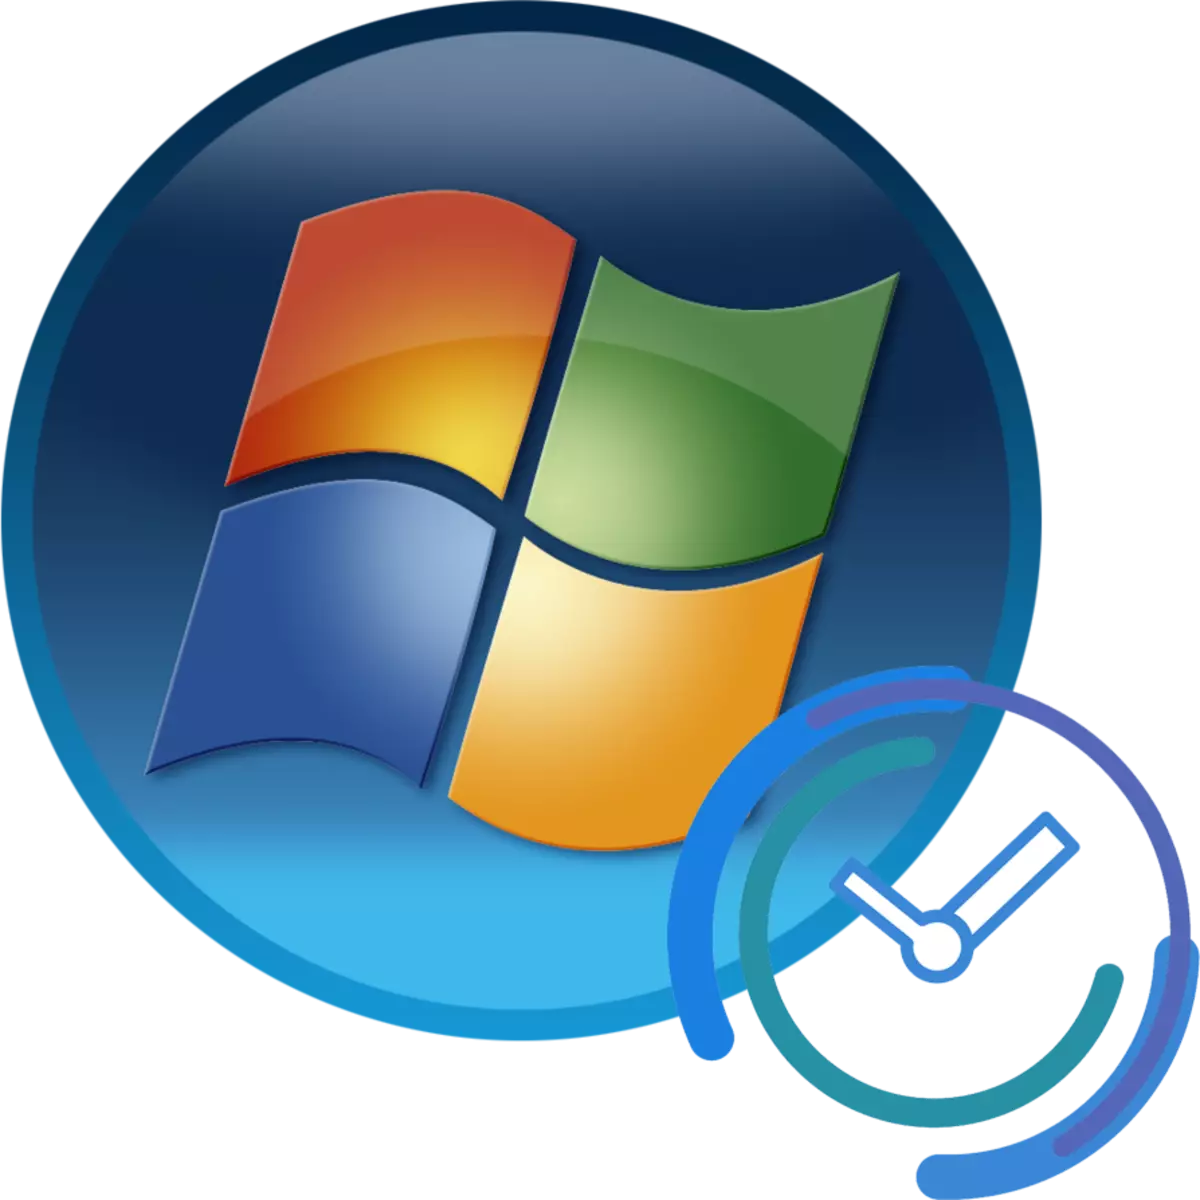 Windows 7 tydsones update